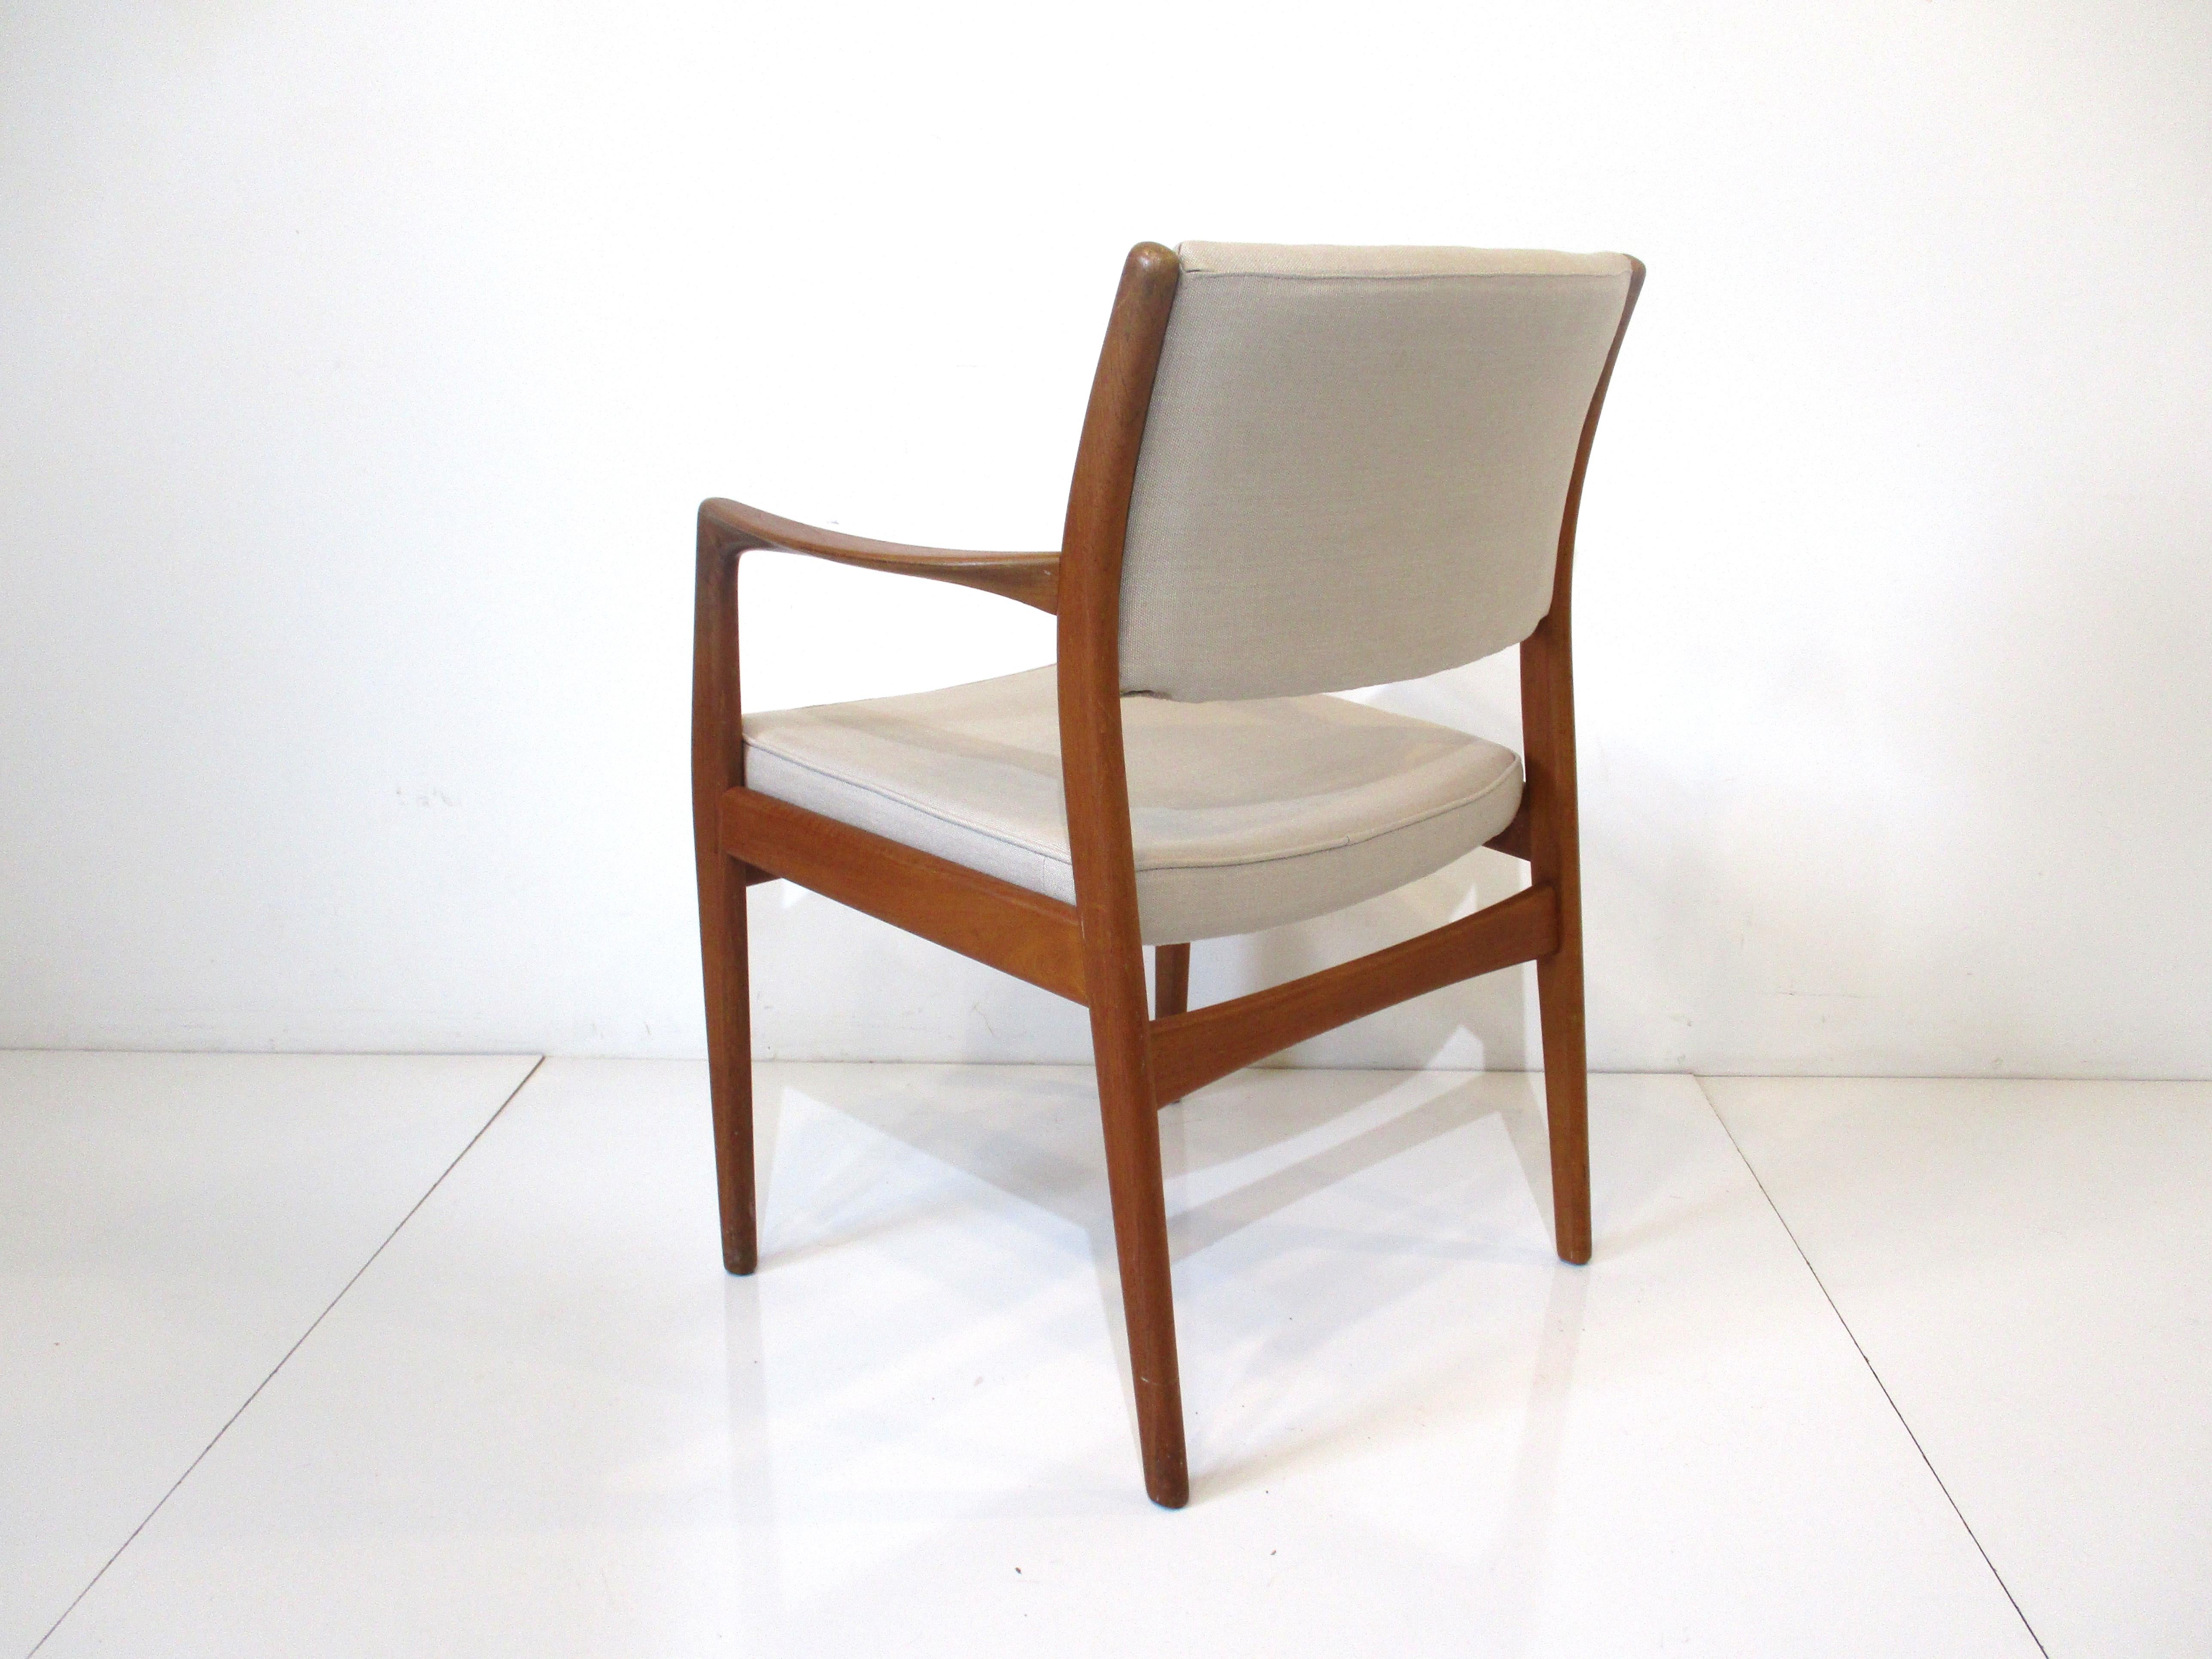 Une chaise d'appoint en teck massif avec des bras évasés et tapissée d'un lin tissé serré de couleur crème. La marque Dux, fabriquée en Suède, est toujours présente sur le fond de l'assise. Une chaise confortable pour votre salon.